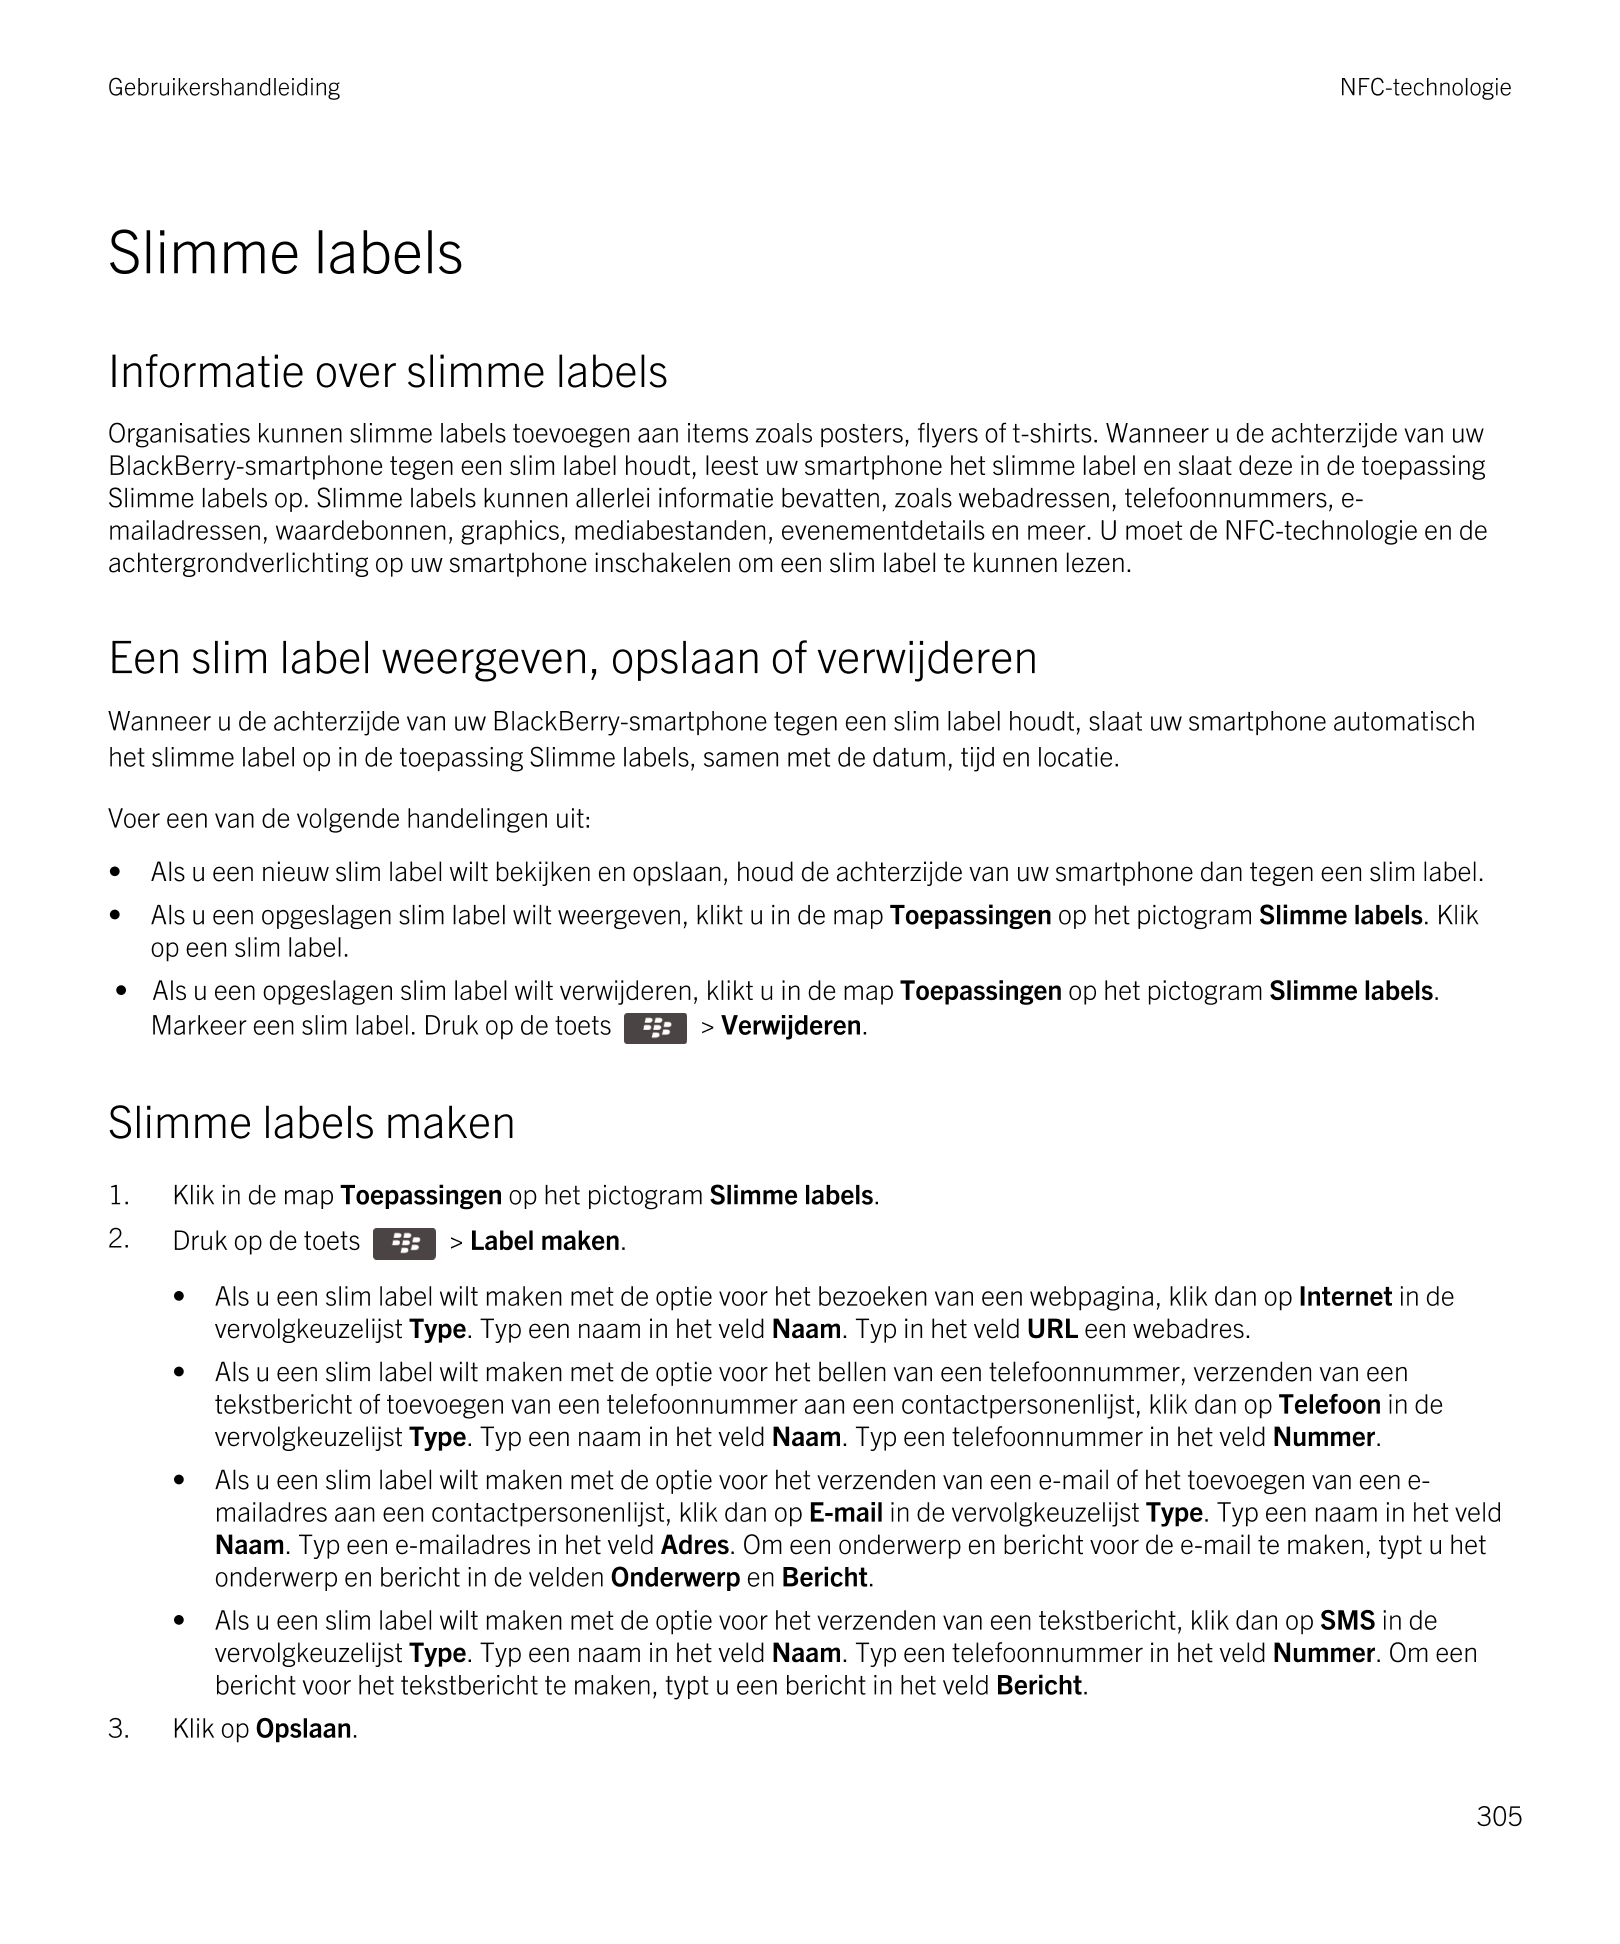 Gebruikershandleiding NFC-technologie
Slimme labels
Informatie over slimme labels
Organisaties kunnen slimme labels toevoegen aa